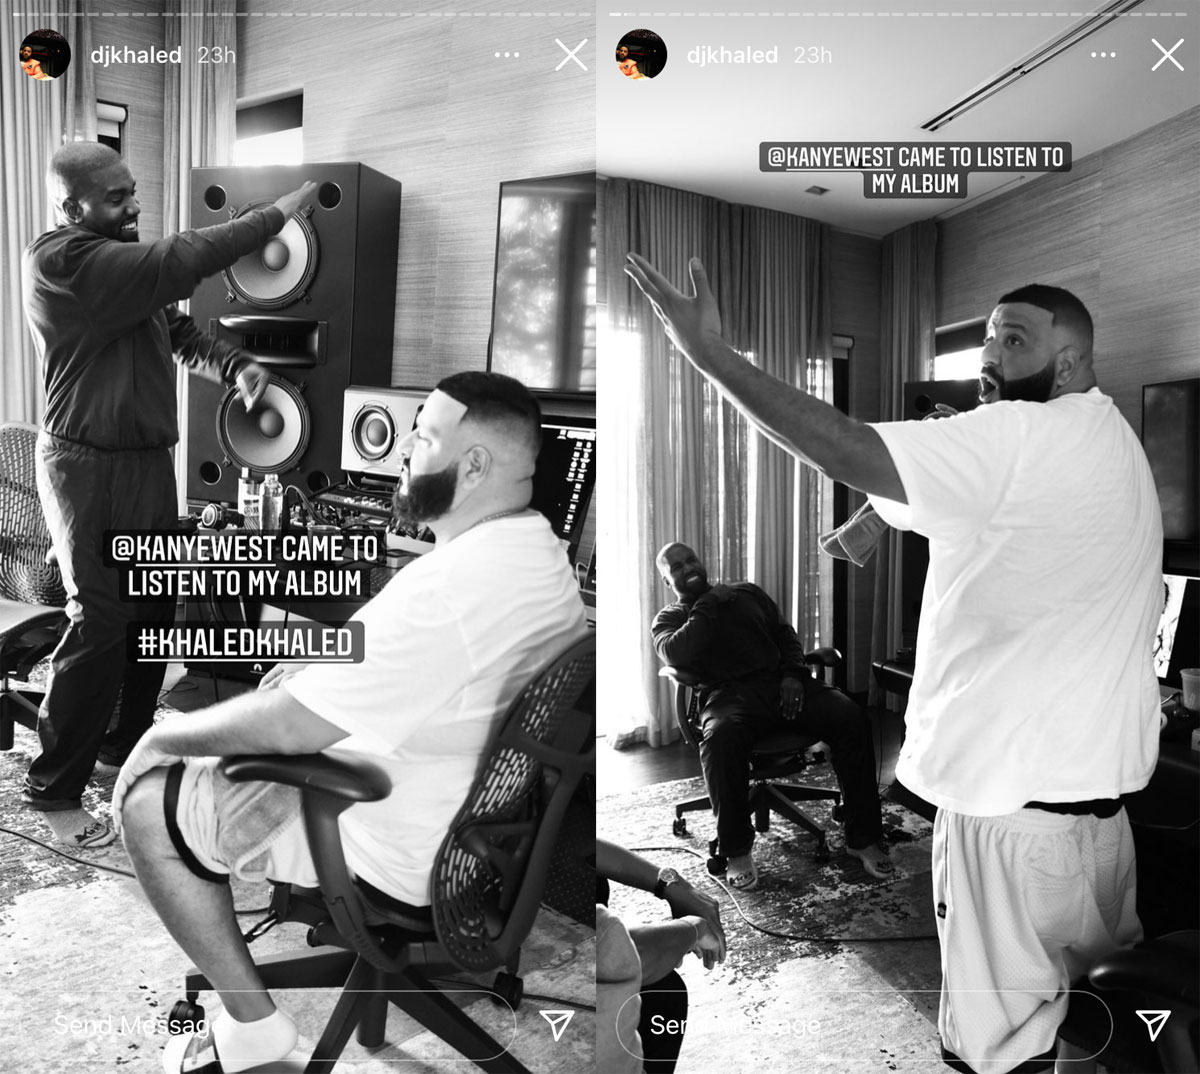 DJ Khaled and Kanye West enjoyed new music together this week!